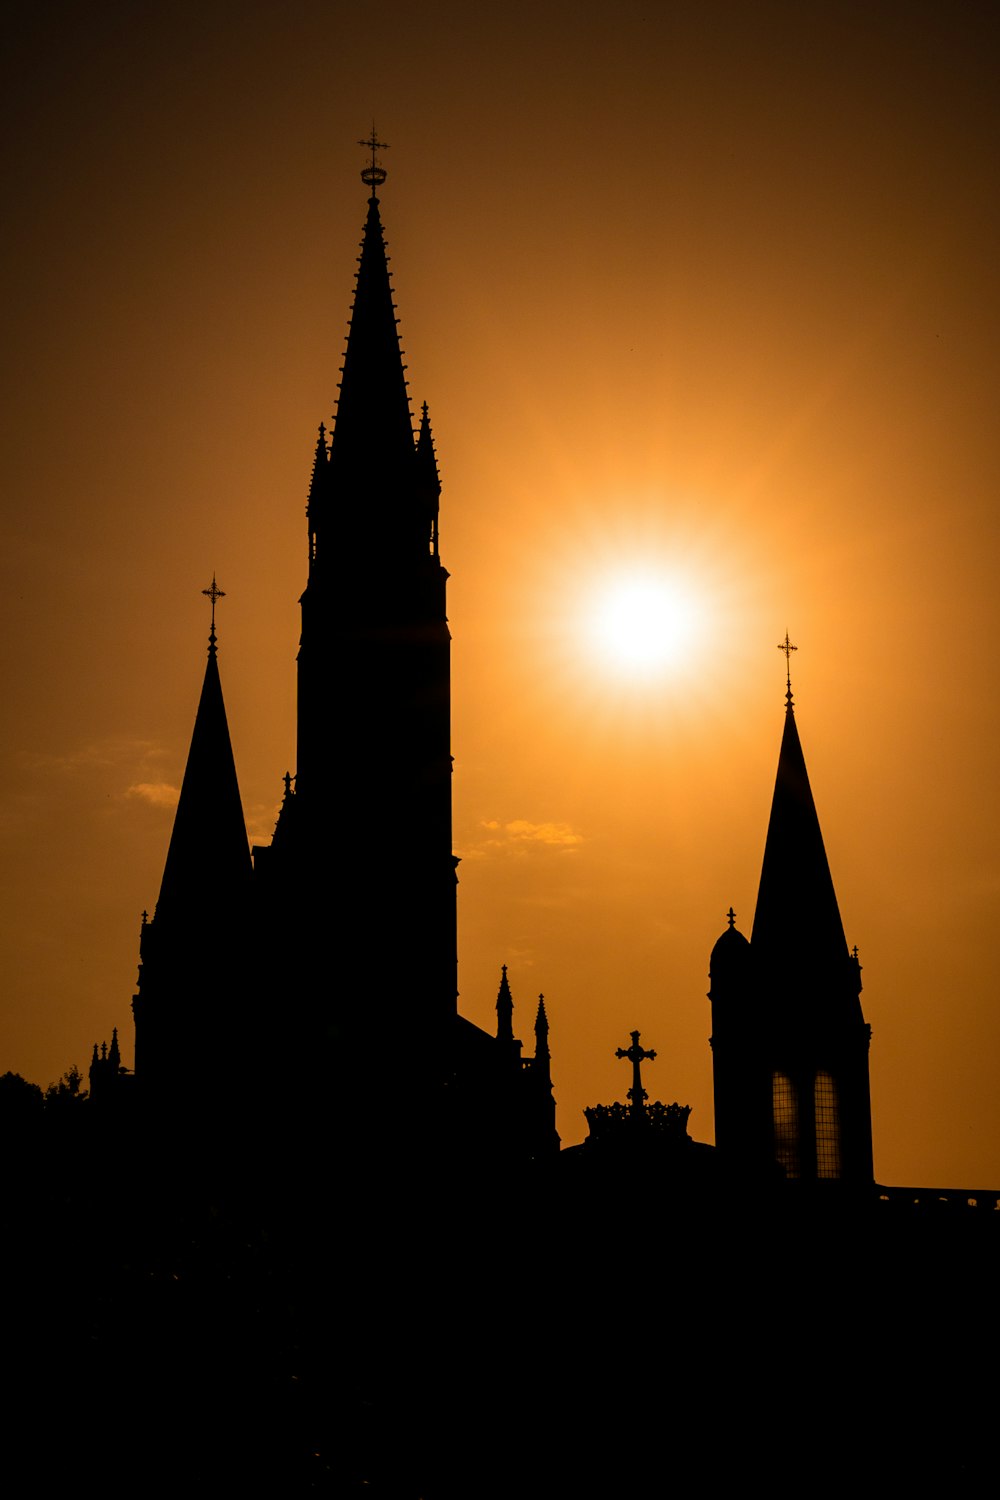 Le soleil se couche derrière le clocher d’une église